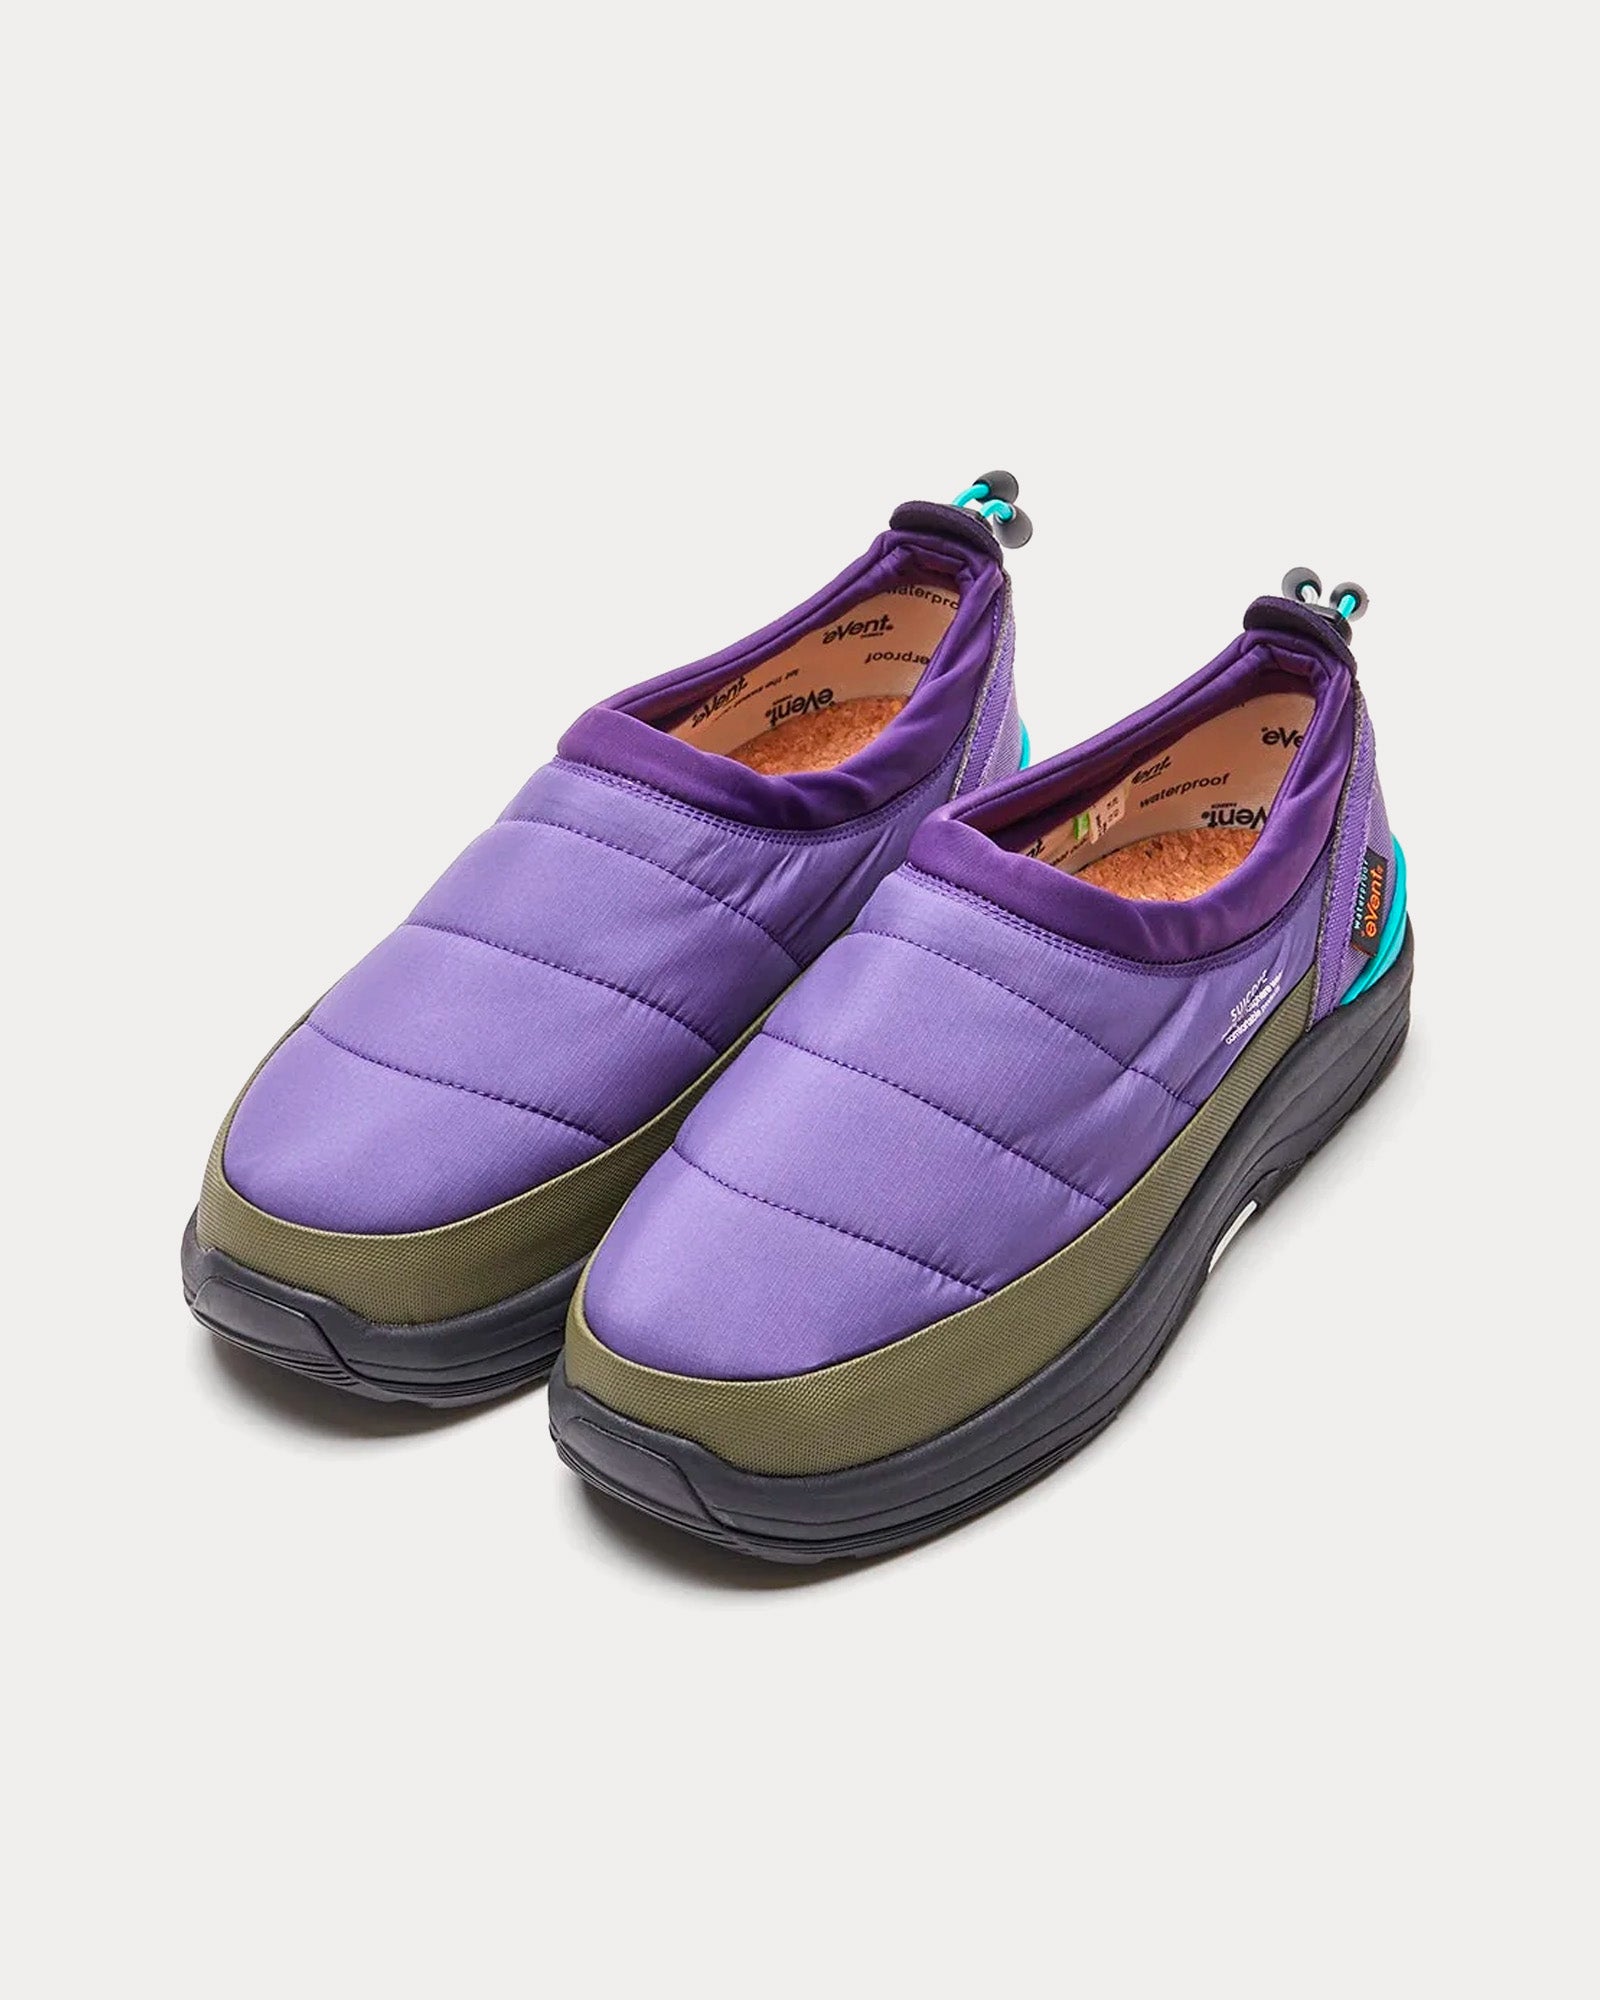 Suicoke - PEPPER-mod-ev Purple / Blac Slip On Sneakers